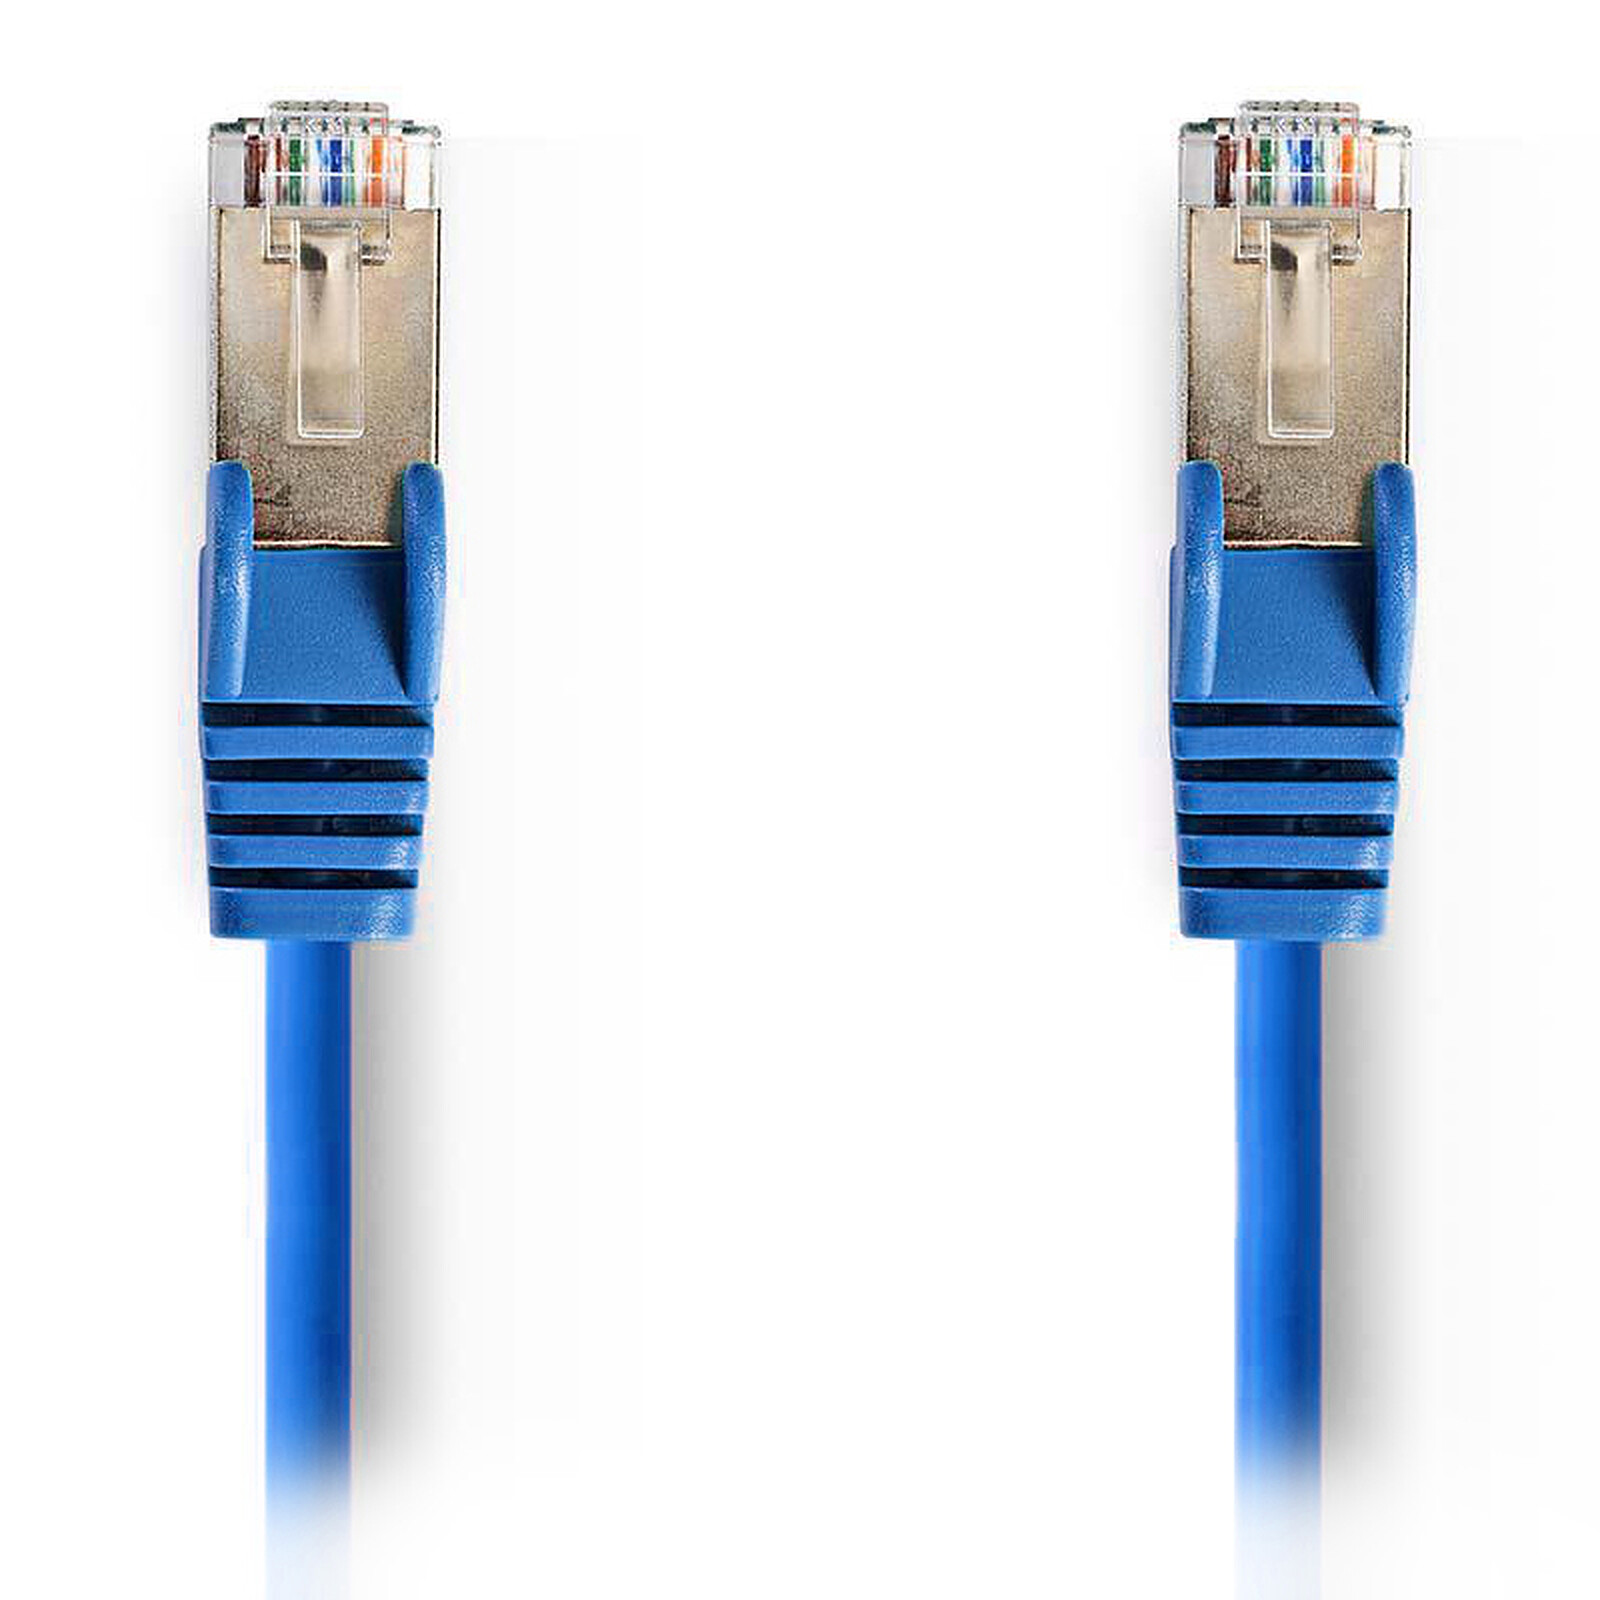 Nedis RJ45 categoría de cable 5e SF/UTP 20 m (azul) - Cable RJ45